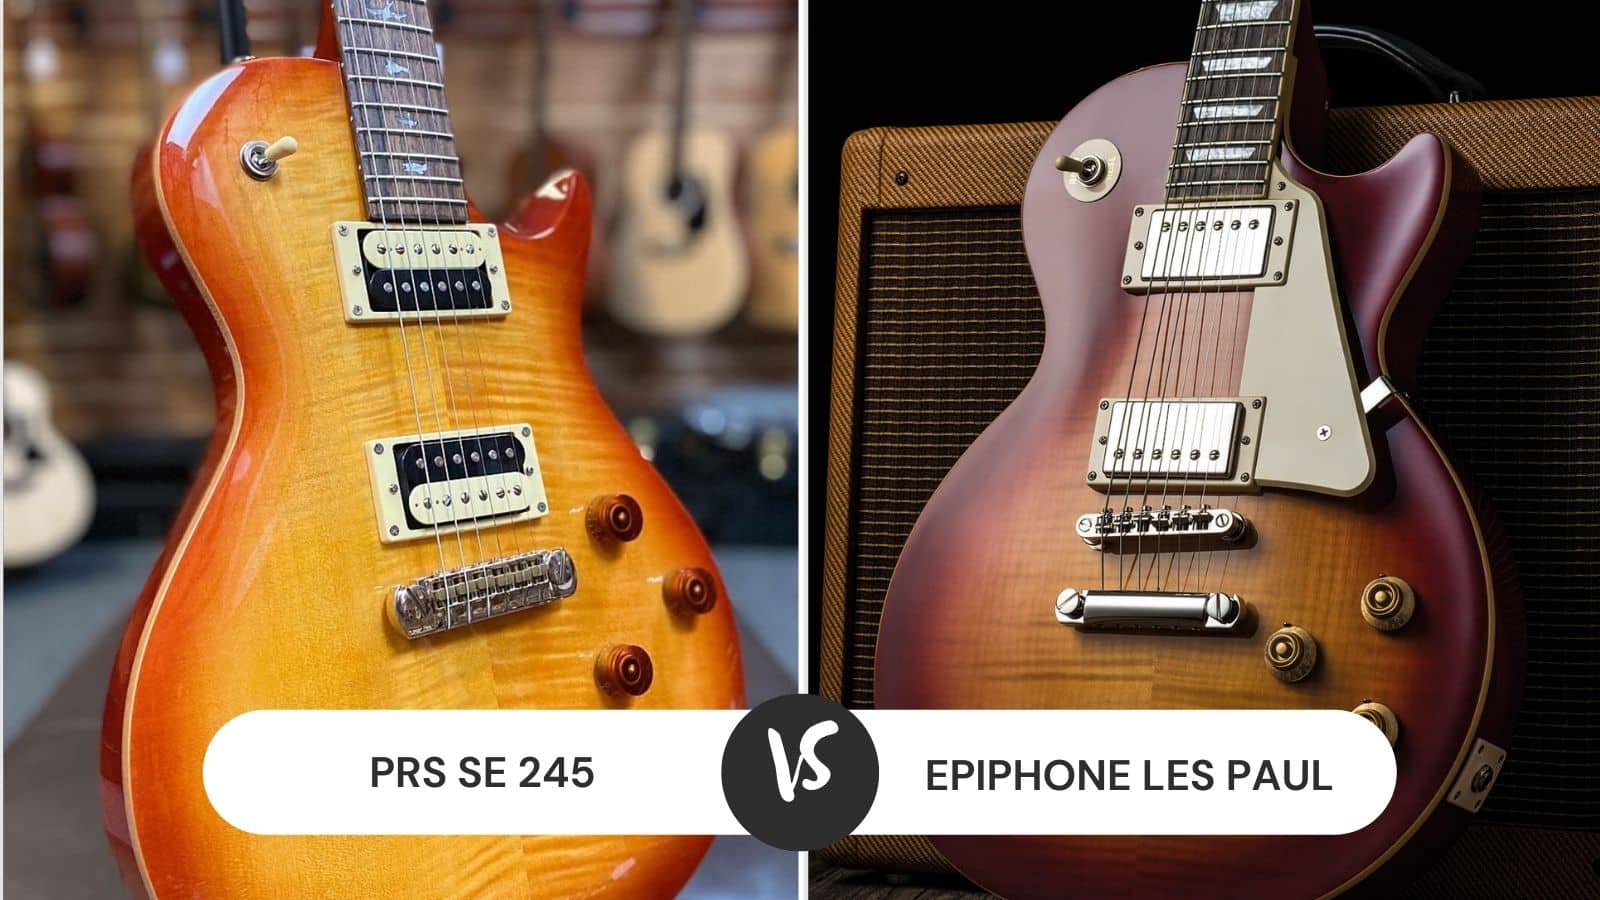 PRS SE 245 vs Epiphone Les Paul